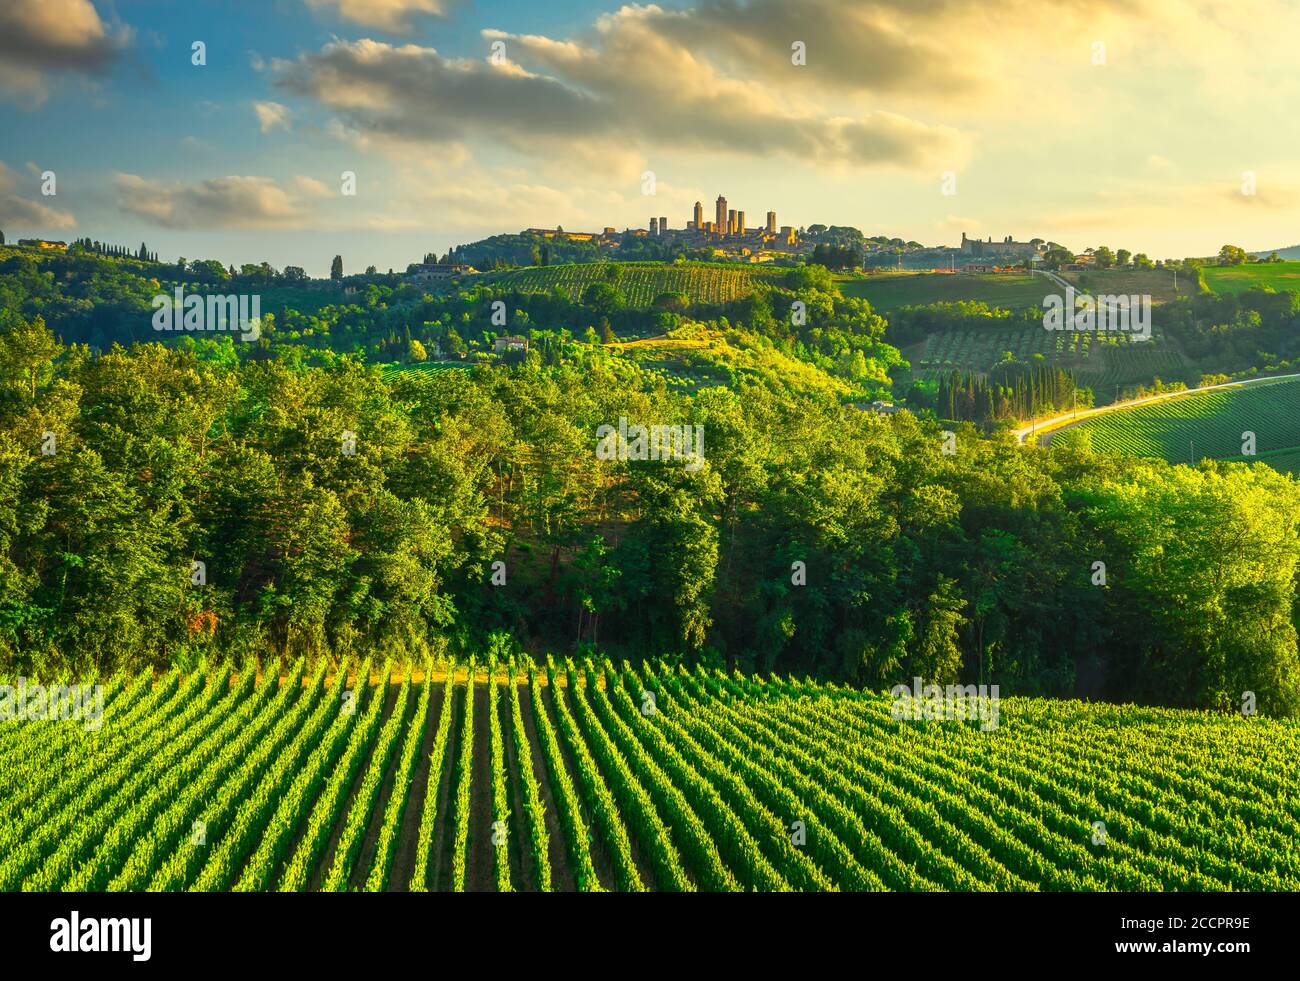 La ville médiévale de San Gimignano surplombe les gratte-ciel et les vignobles, la campagne, le paysage est panoramique au coucher du soleil. Toscane, Italie, Europe. Banque D'Images